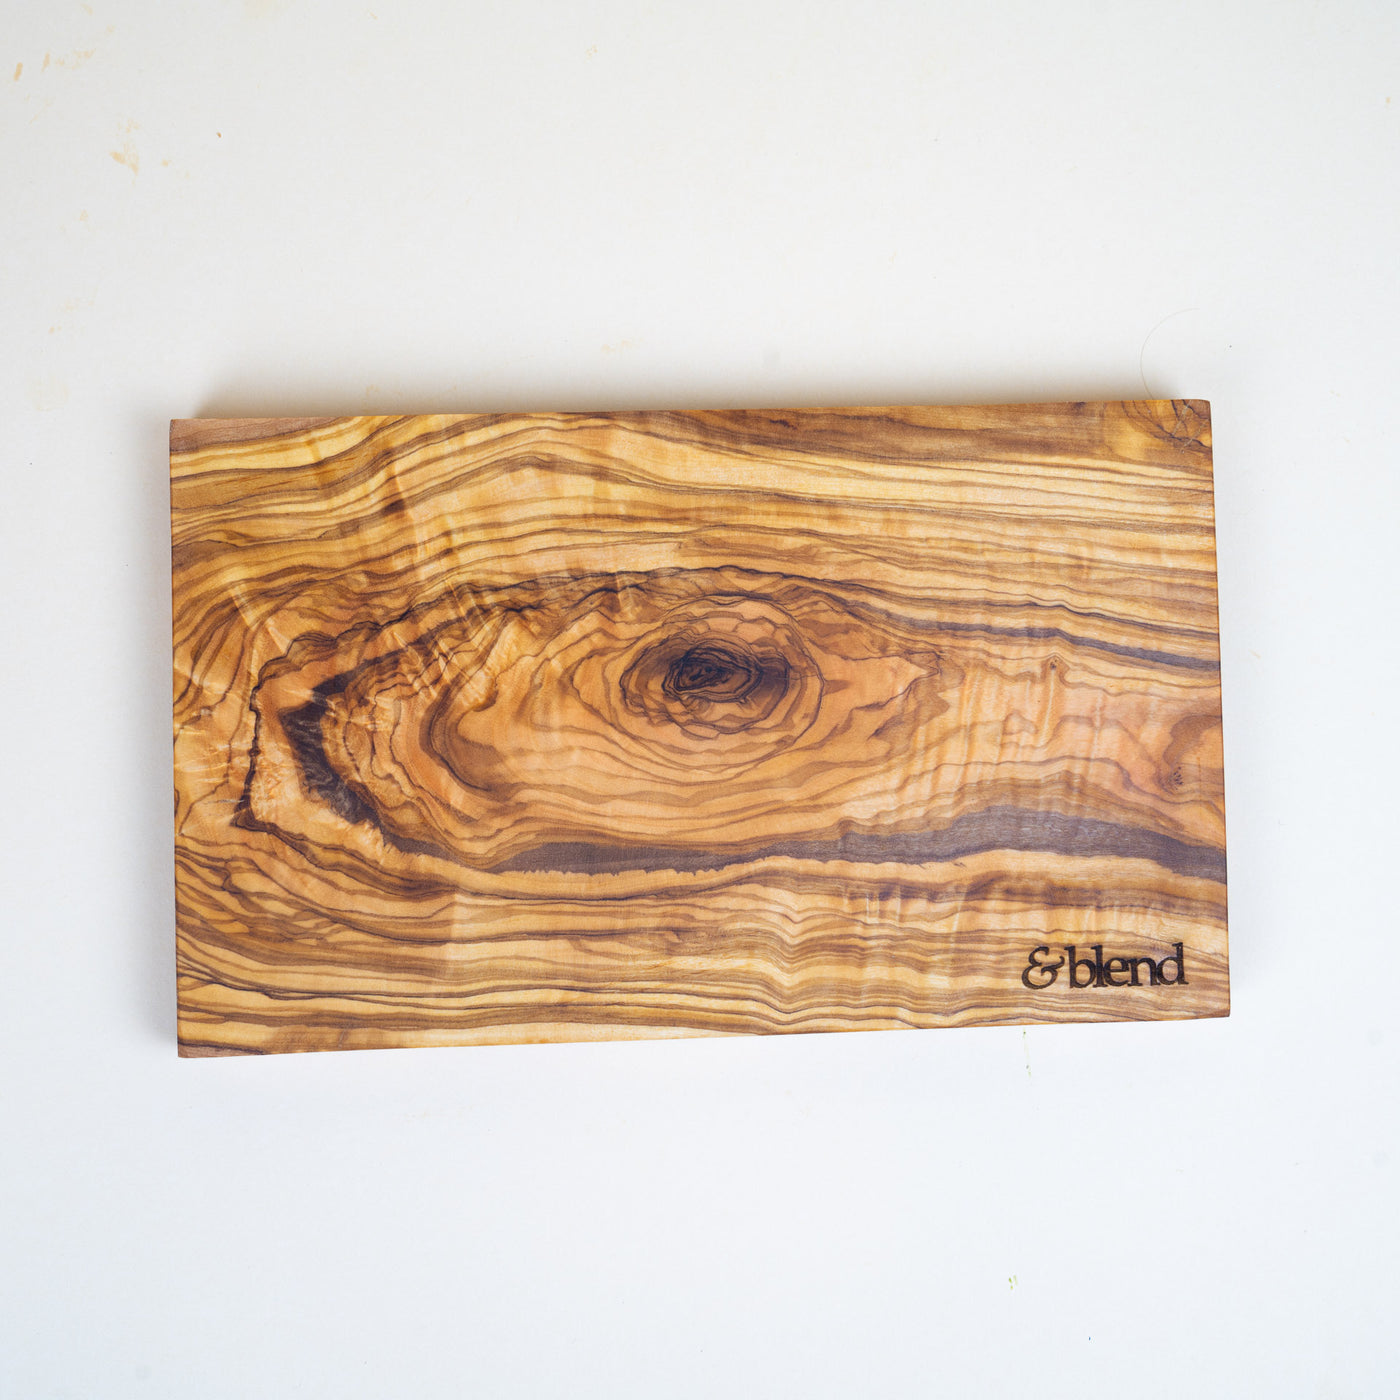 Corazón de madera fabricado en madera de olivo